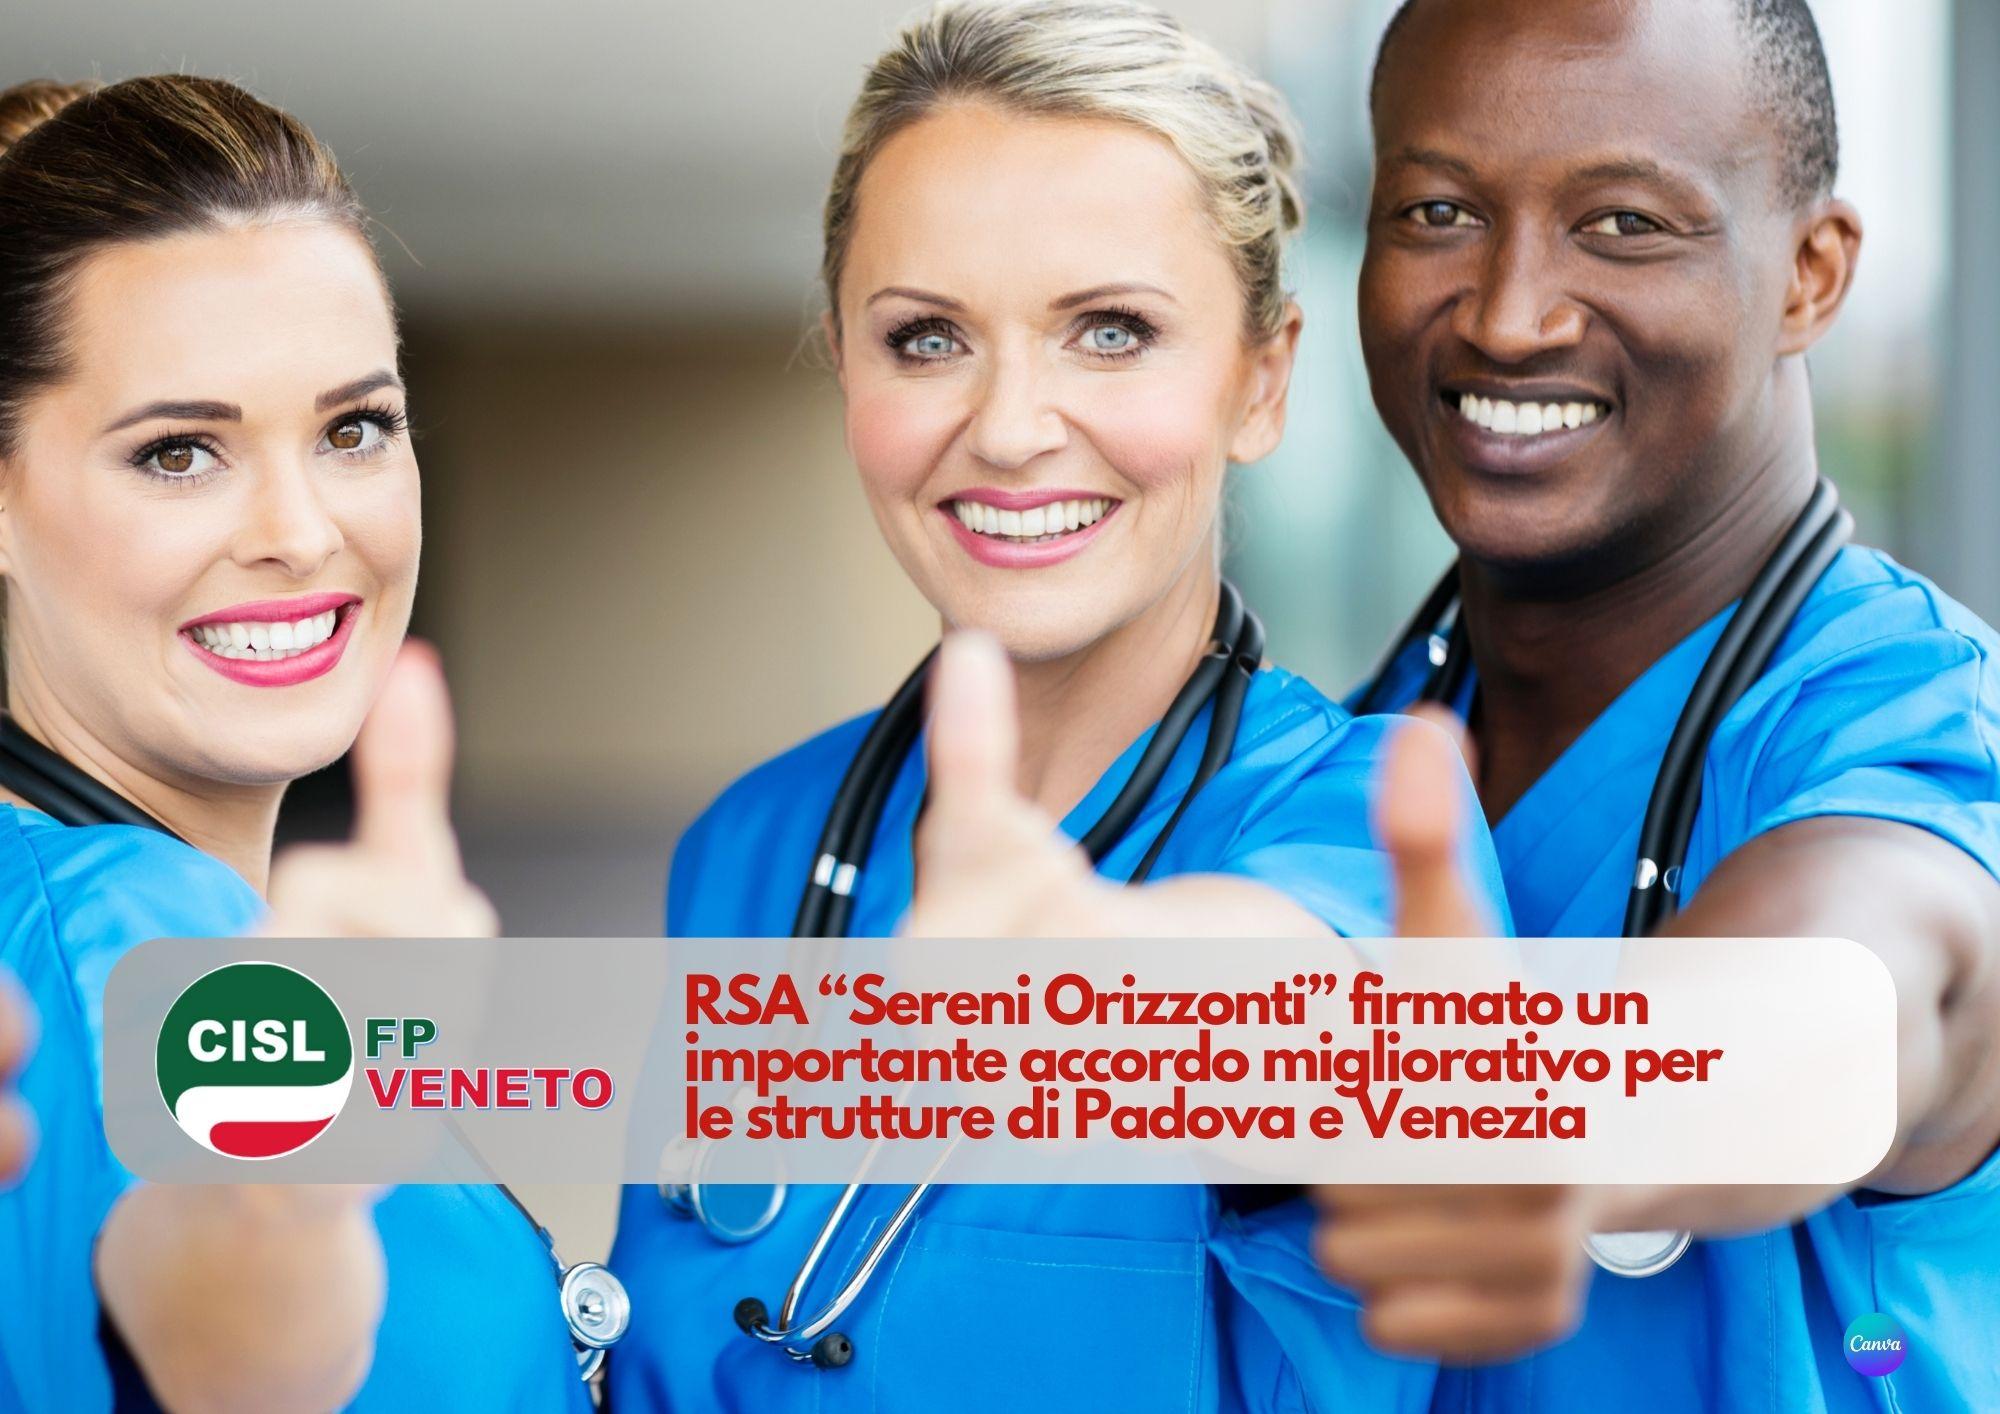 CISL FP Veneto. Firmato importante accordo di armonizzazione del contratto strutture "Sereni Orizzonti"